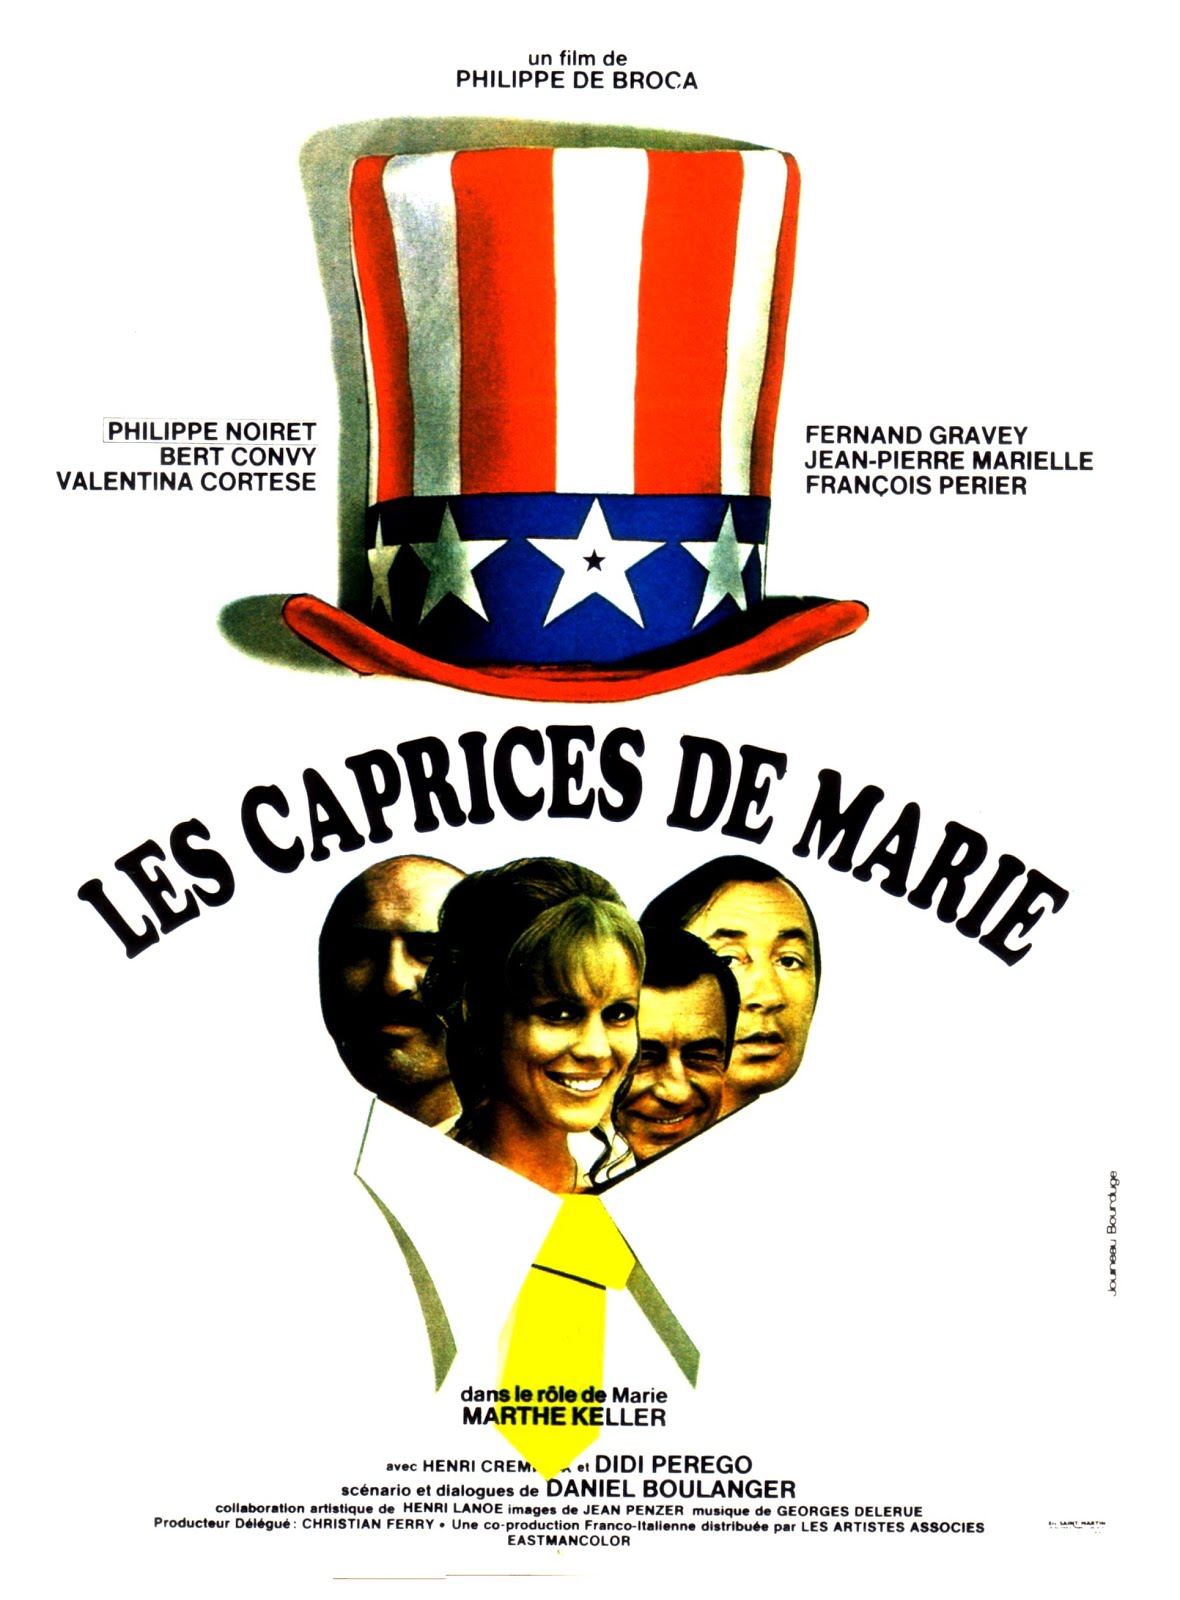 Les caprices de Marie (1969) Philippe De Broca - Les caprices de Marie (21.07.1969 / 12.09.1969)